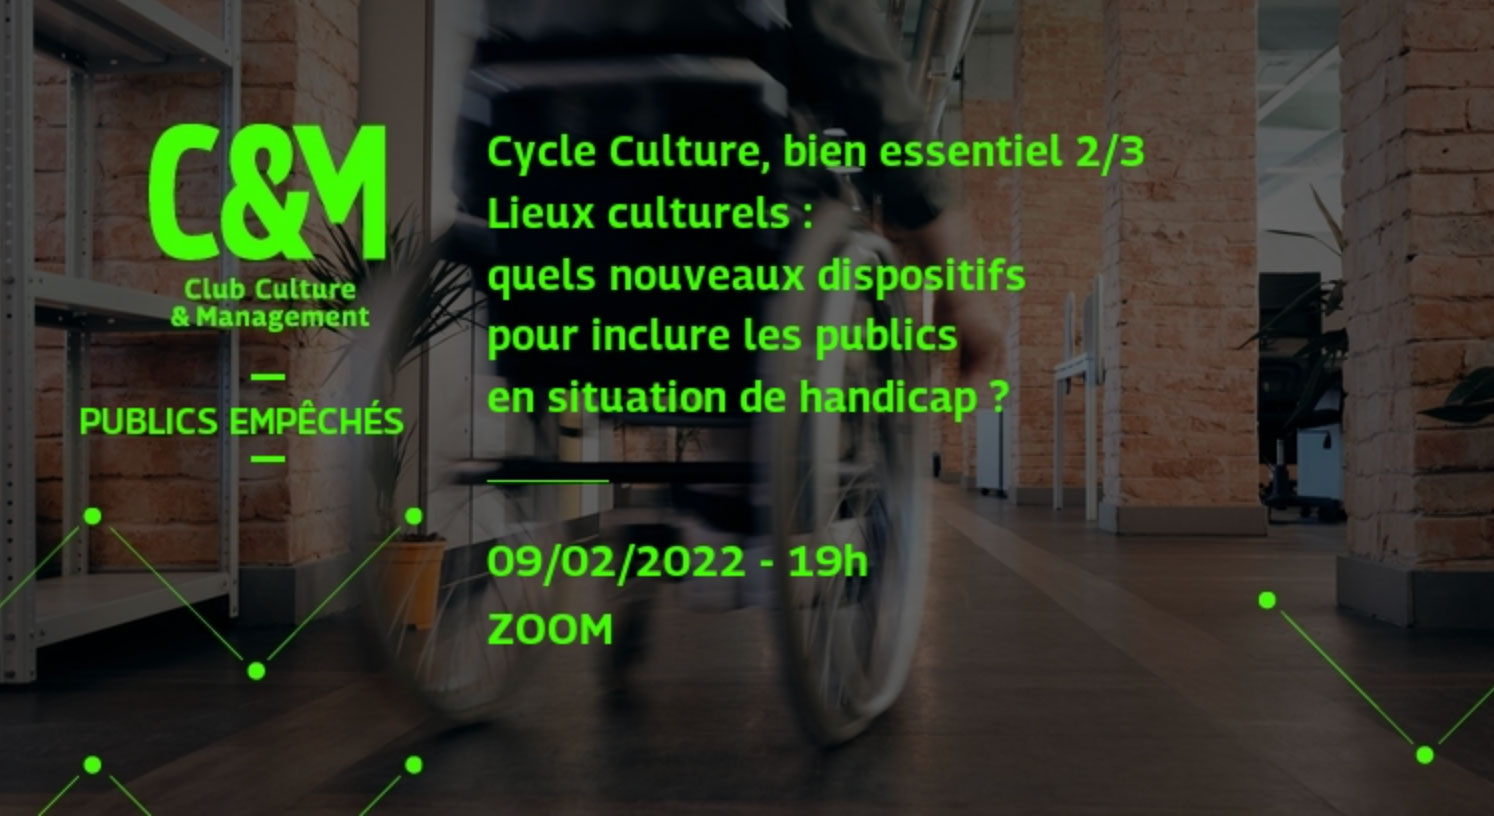 C&M Club Culture et Management. Cycle culture, bien essentiel 2 sur 3 : lieux culturels, quels nouveaux dispositifs pour inclure les publics en situation de handicap ? (le 09/02/22 à 19h)